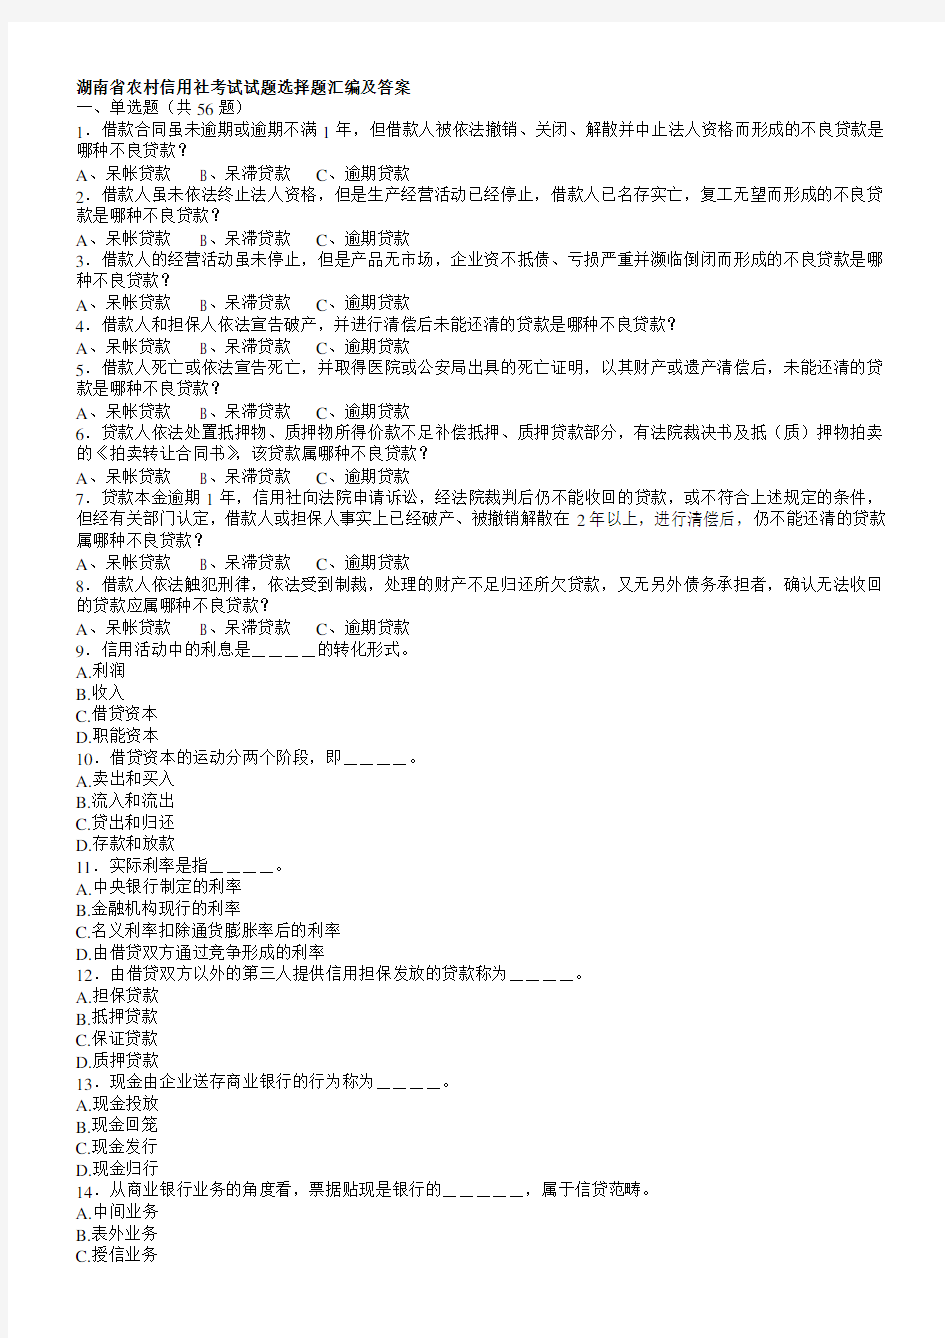 2019年湖南省农村信用社考试试题选择题汇编及答案